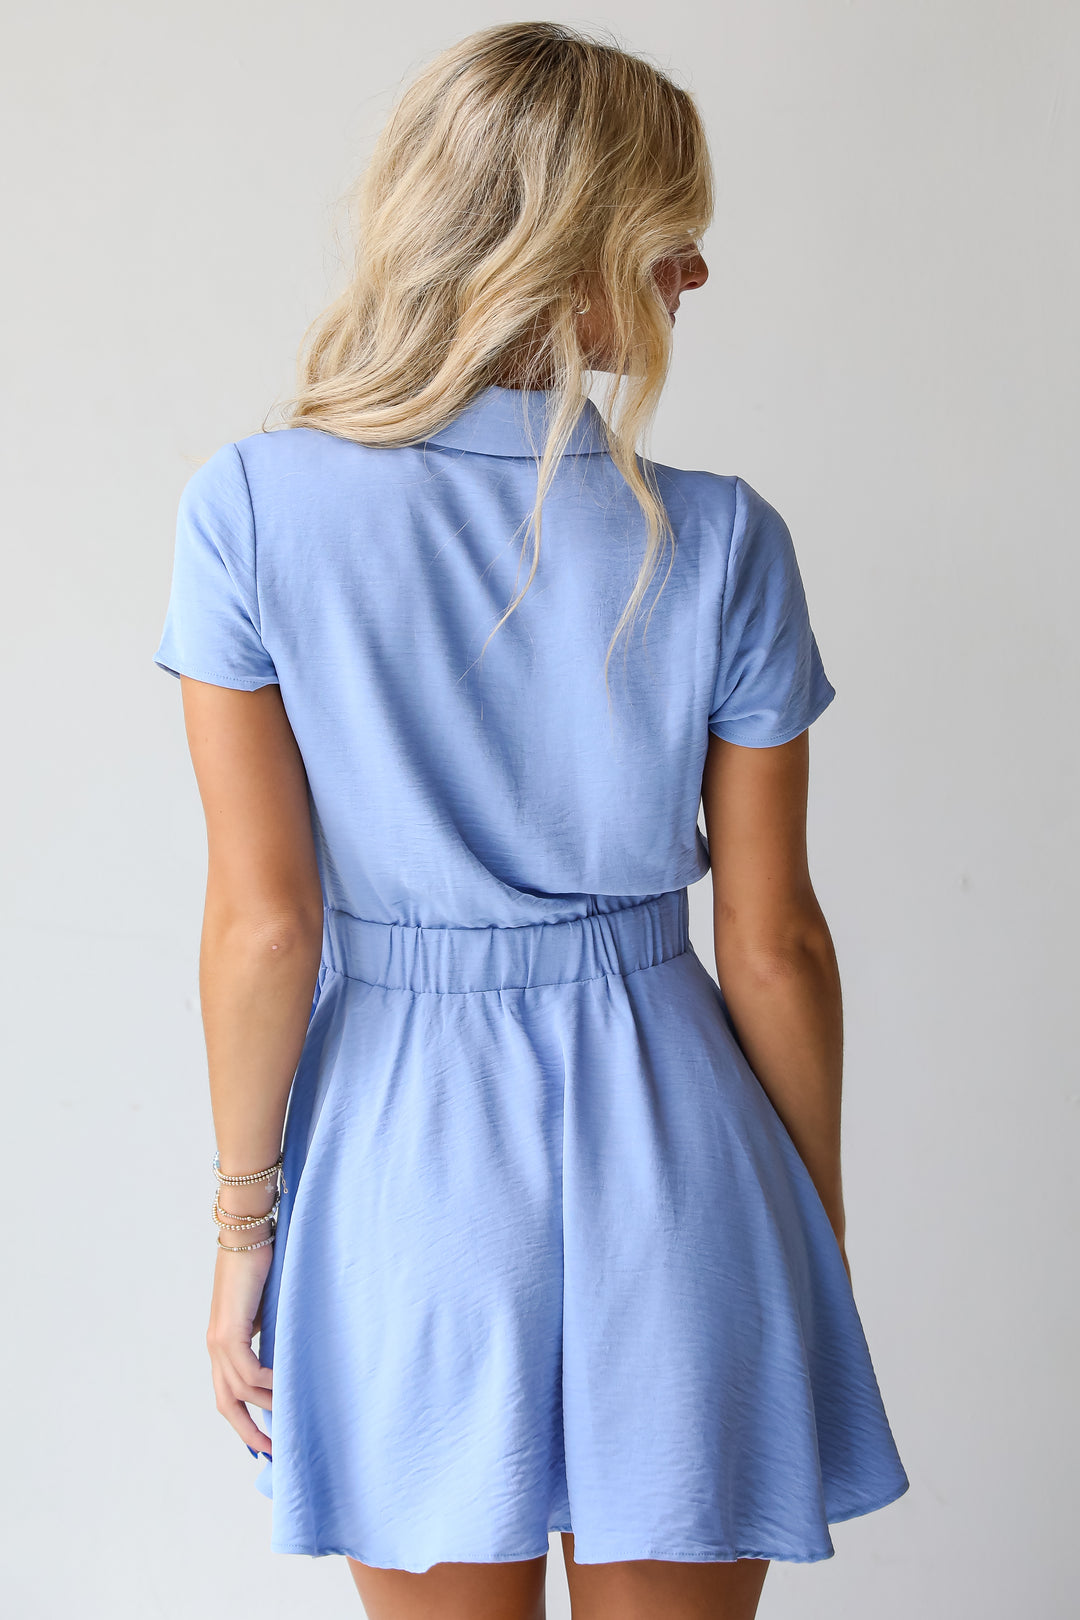 Everlasting Grace Blue Mini Dress